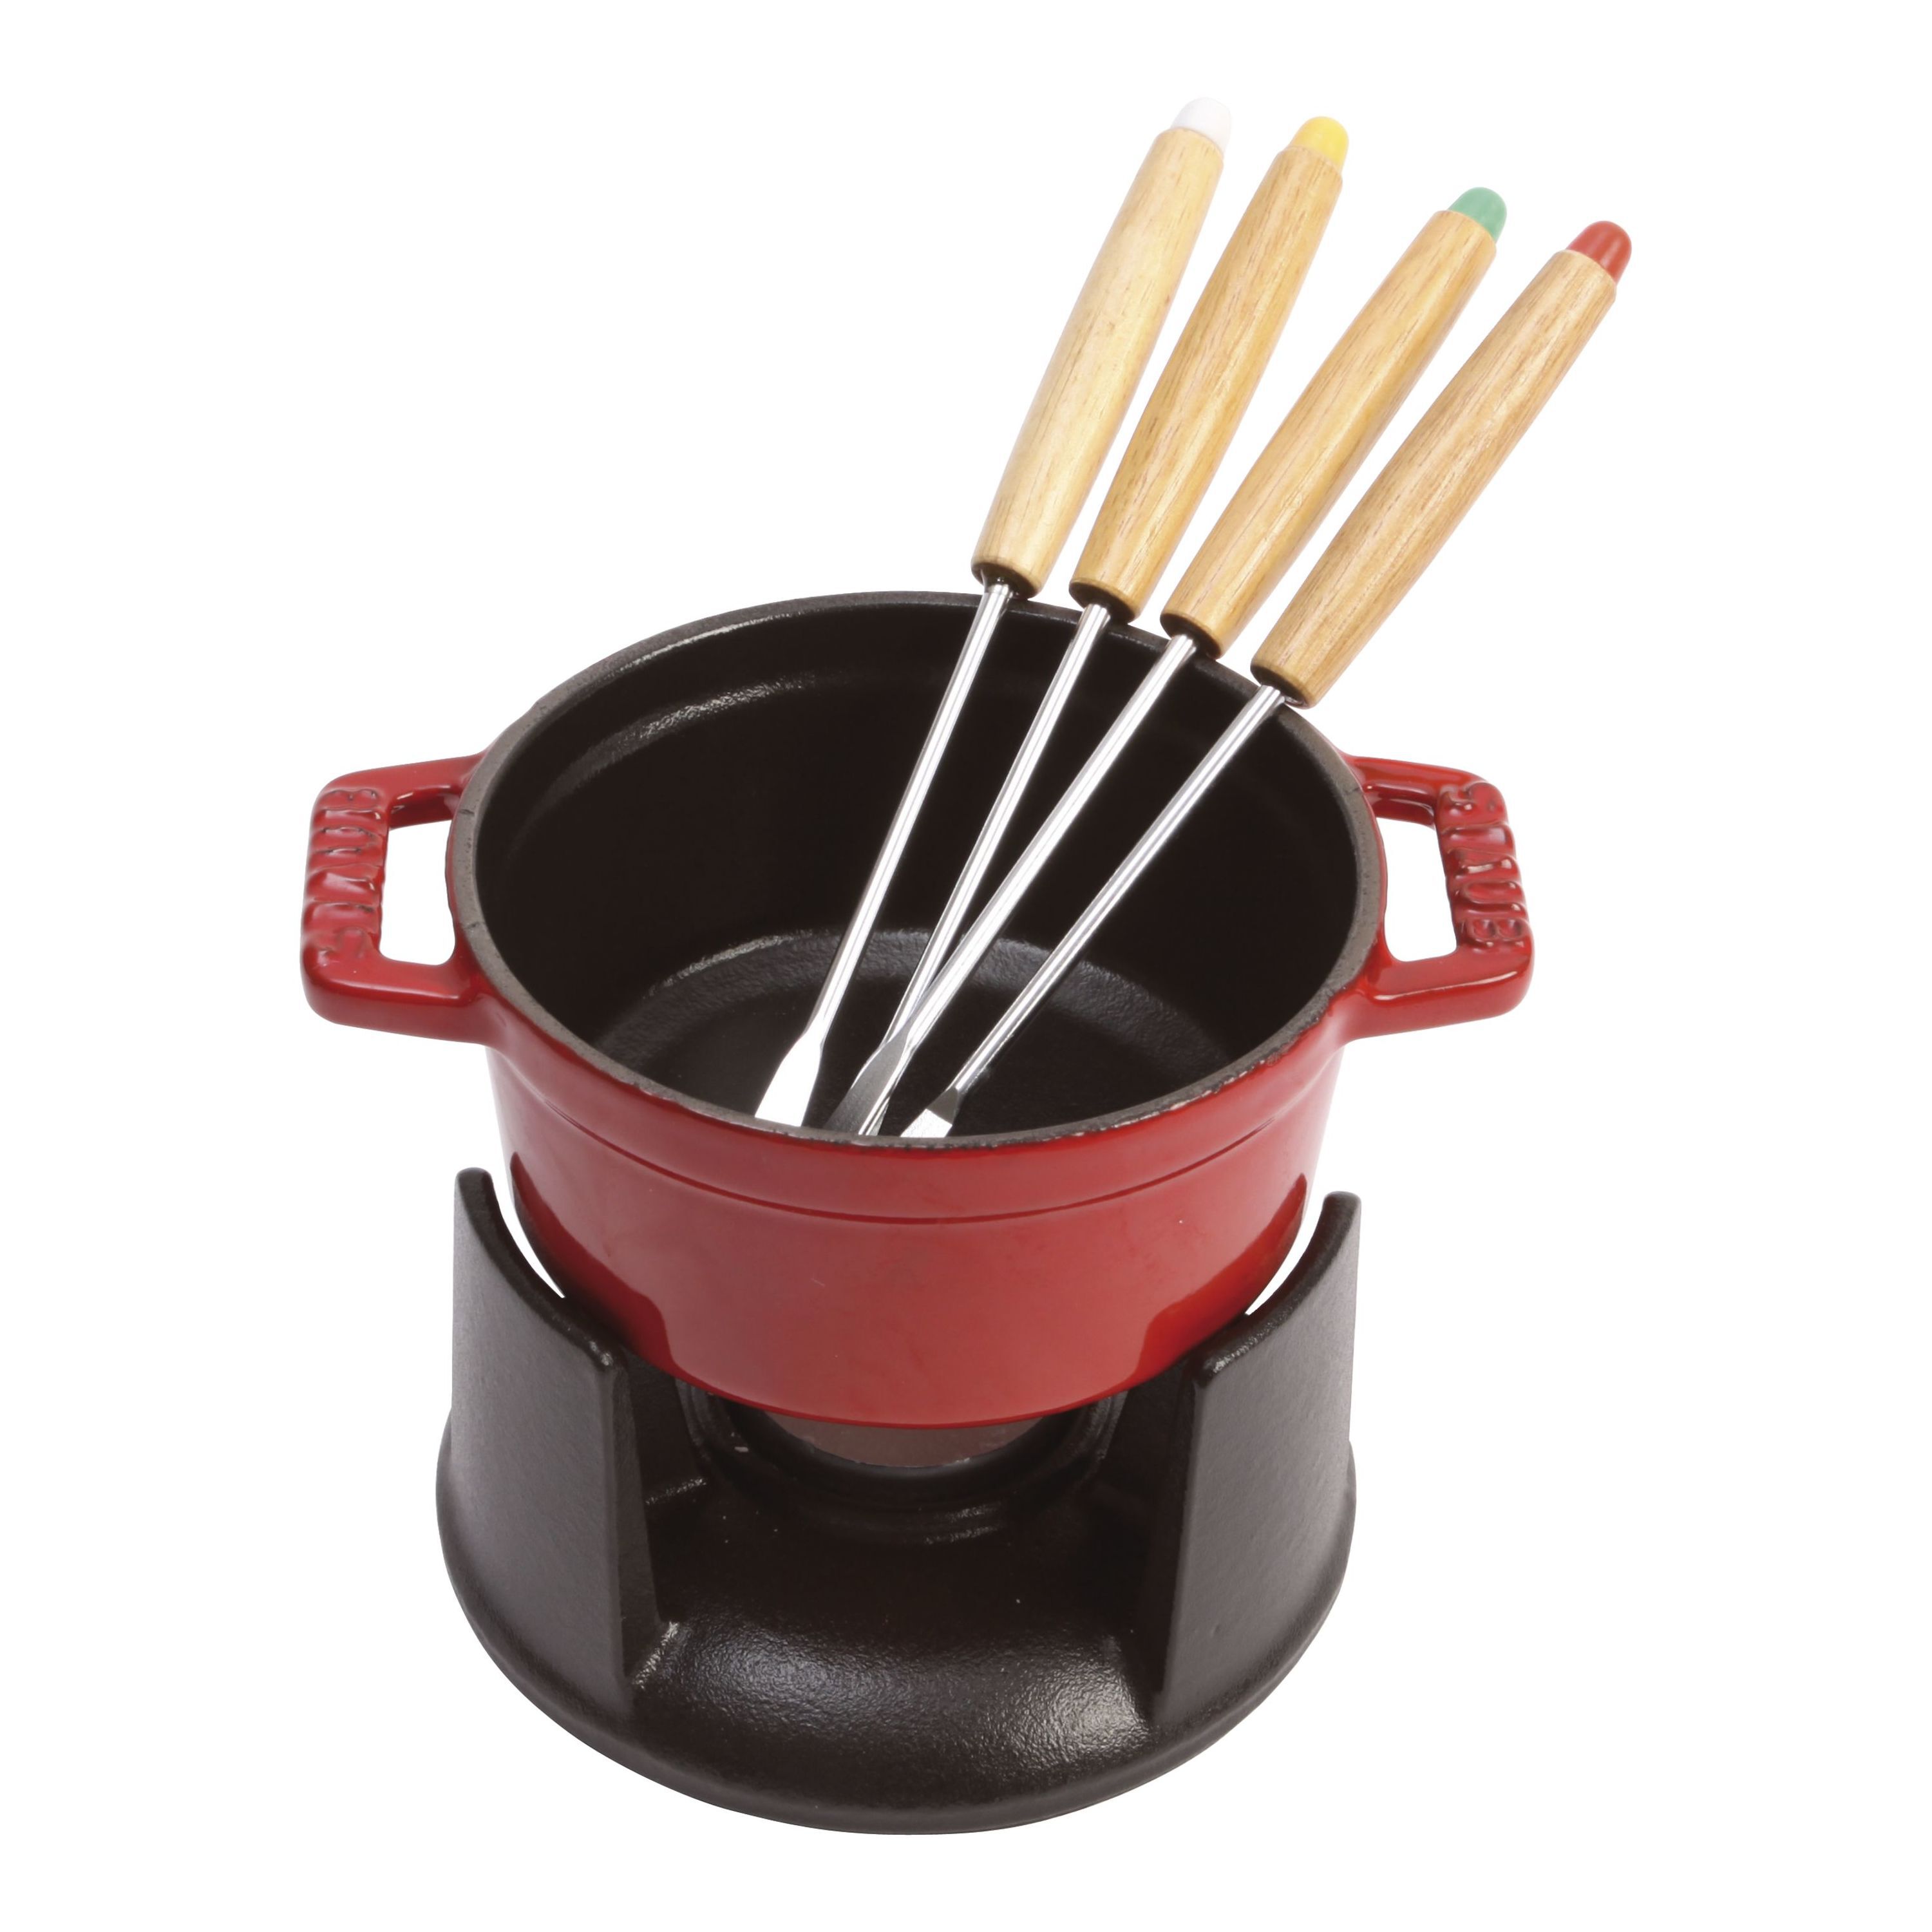 フォンデュ鍋| 鋳物ホーロー鍋| ストウブ(STAUB)公式通販